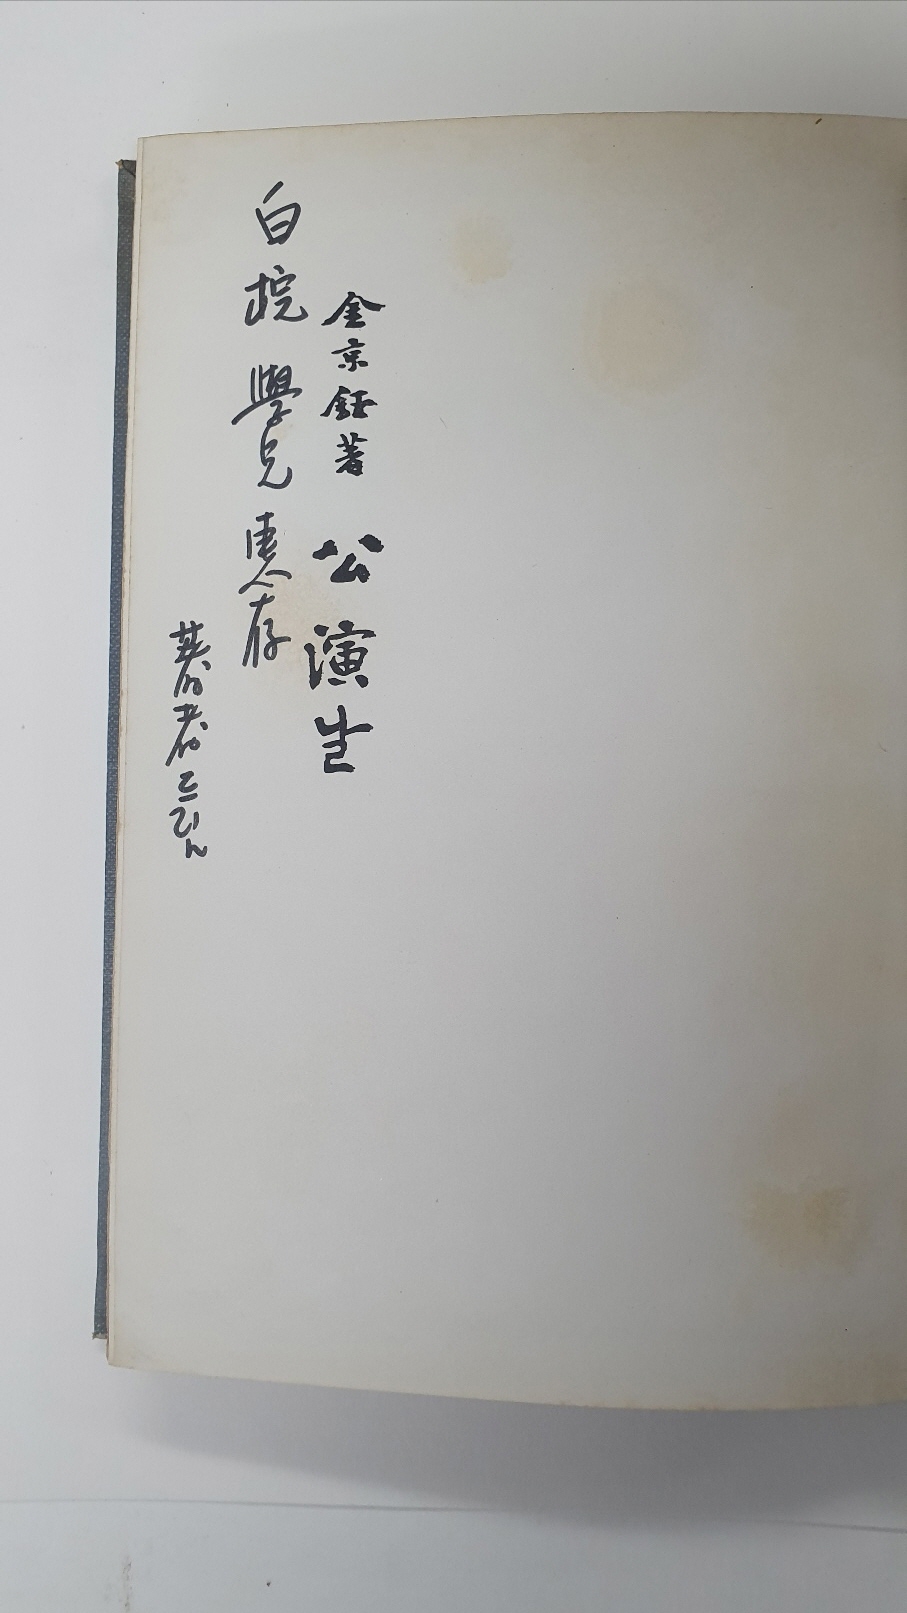 김경옥희곡집 [공연날], 1976 초판 저자서명본